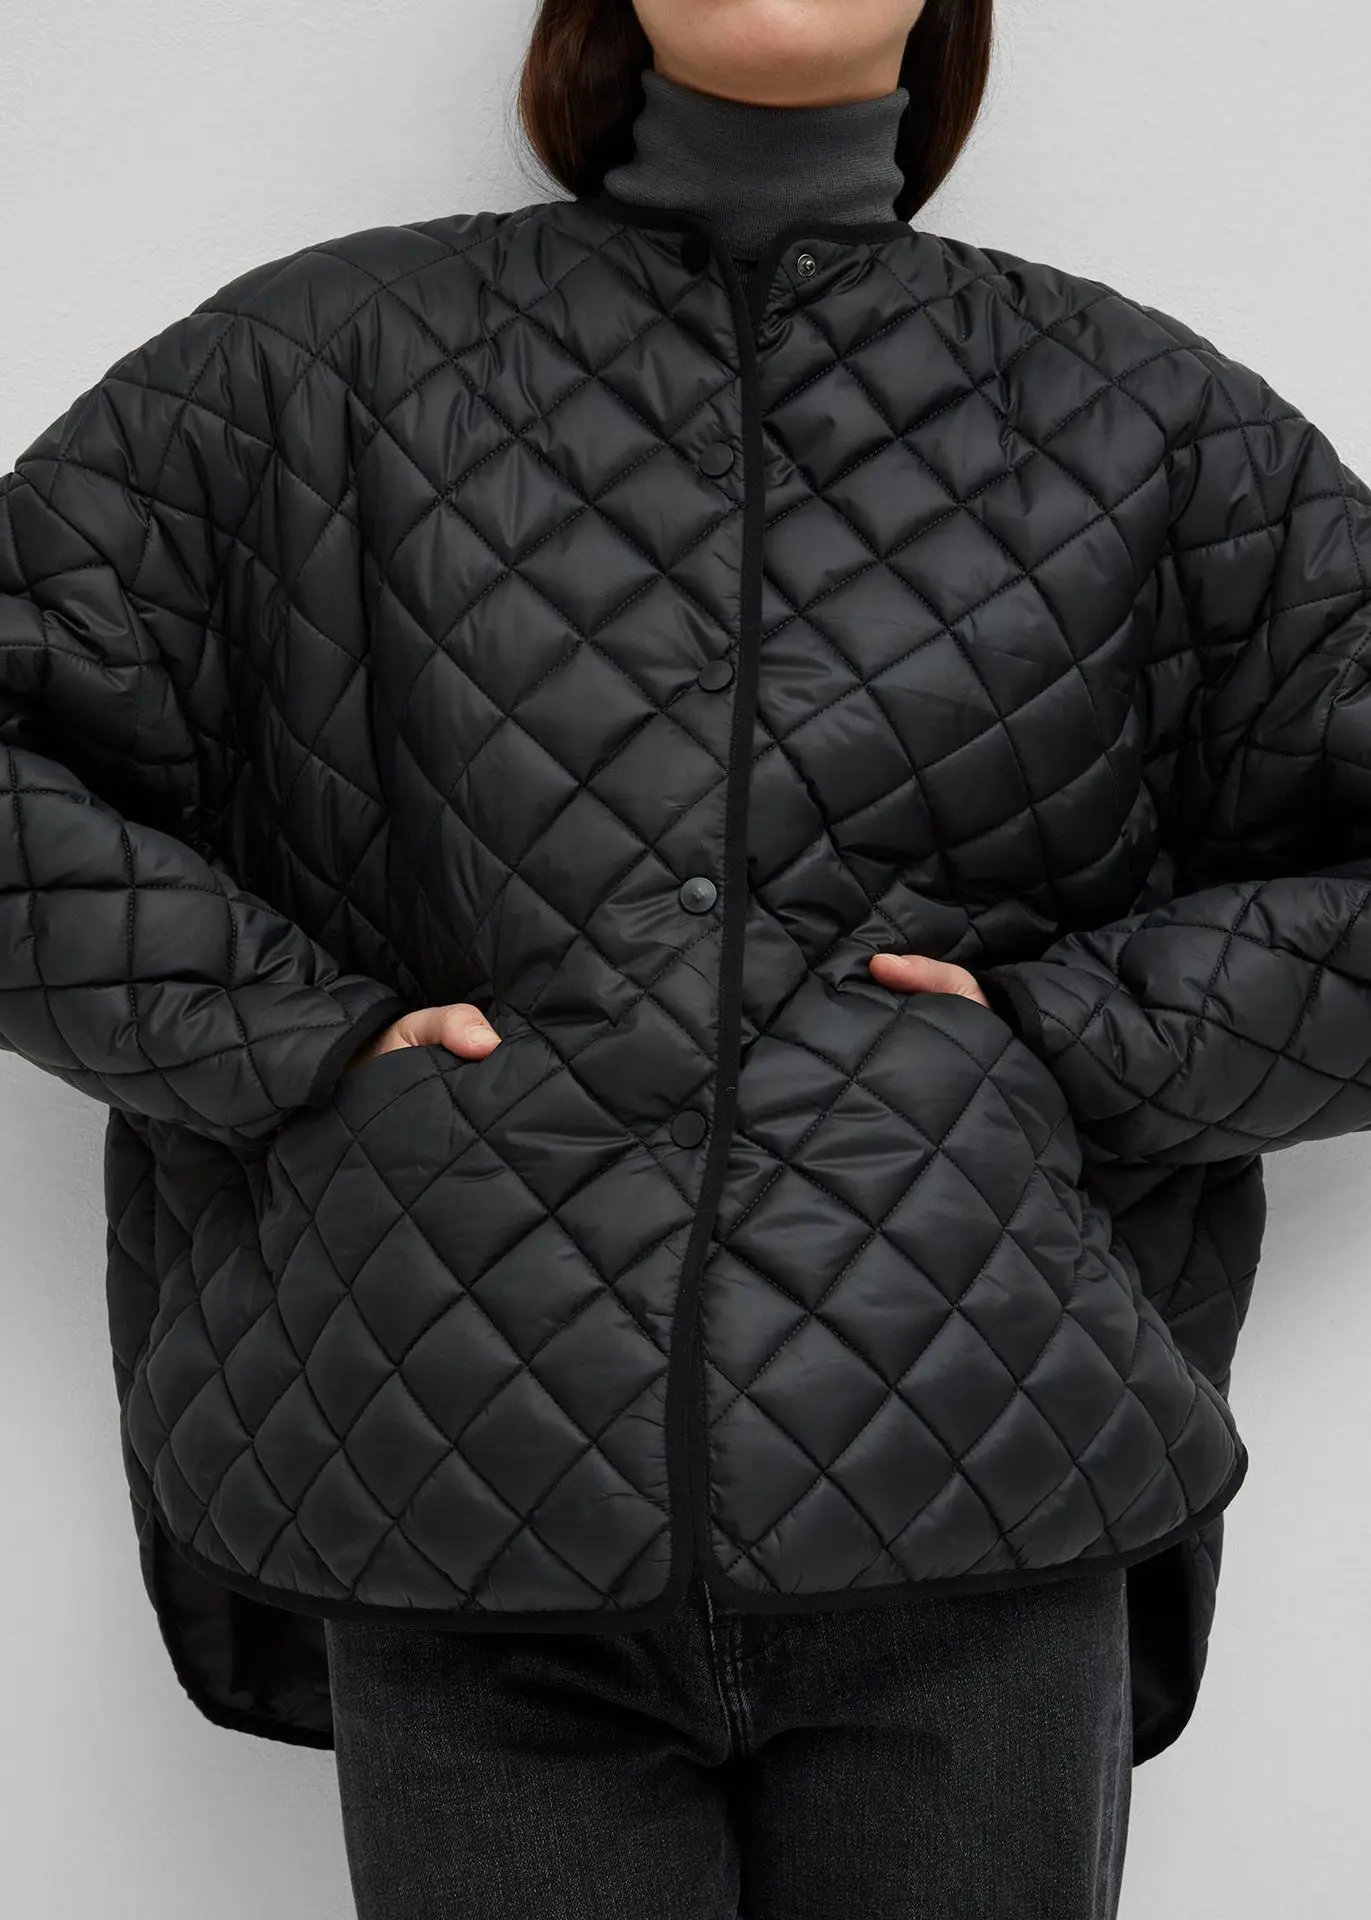 Женская куртка осень и зима новая короткая Передняя и длинная задняя дизайн имеет свободный ветер теплый хлопок стеганая куртка